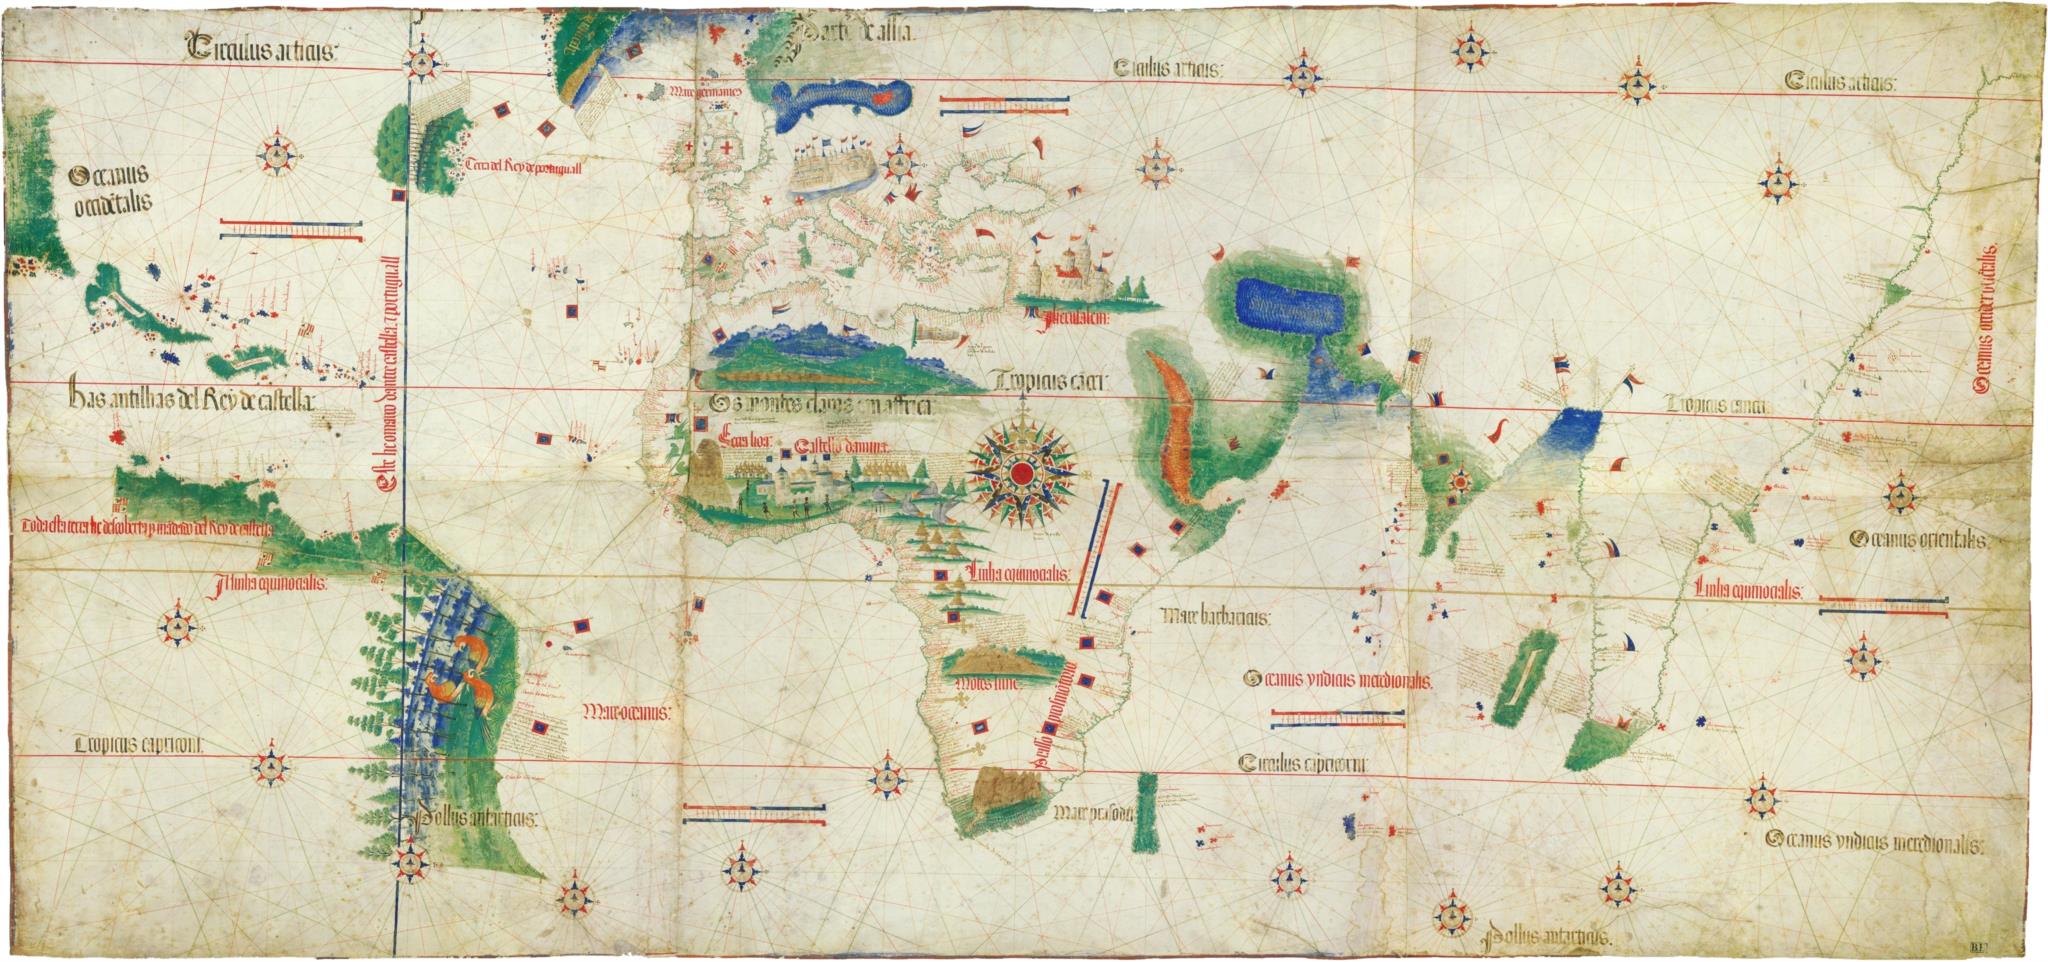 Lembras-te desta? - Um belo e muito antigo mapa de Portugal